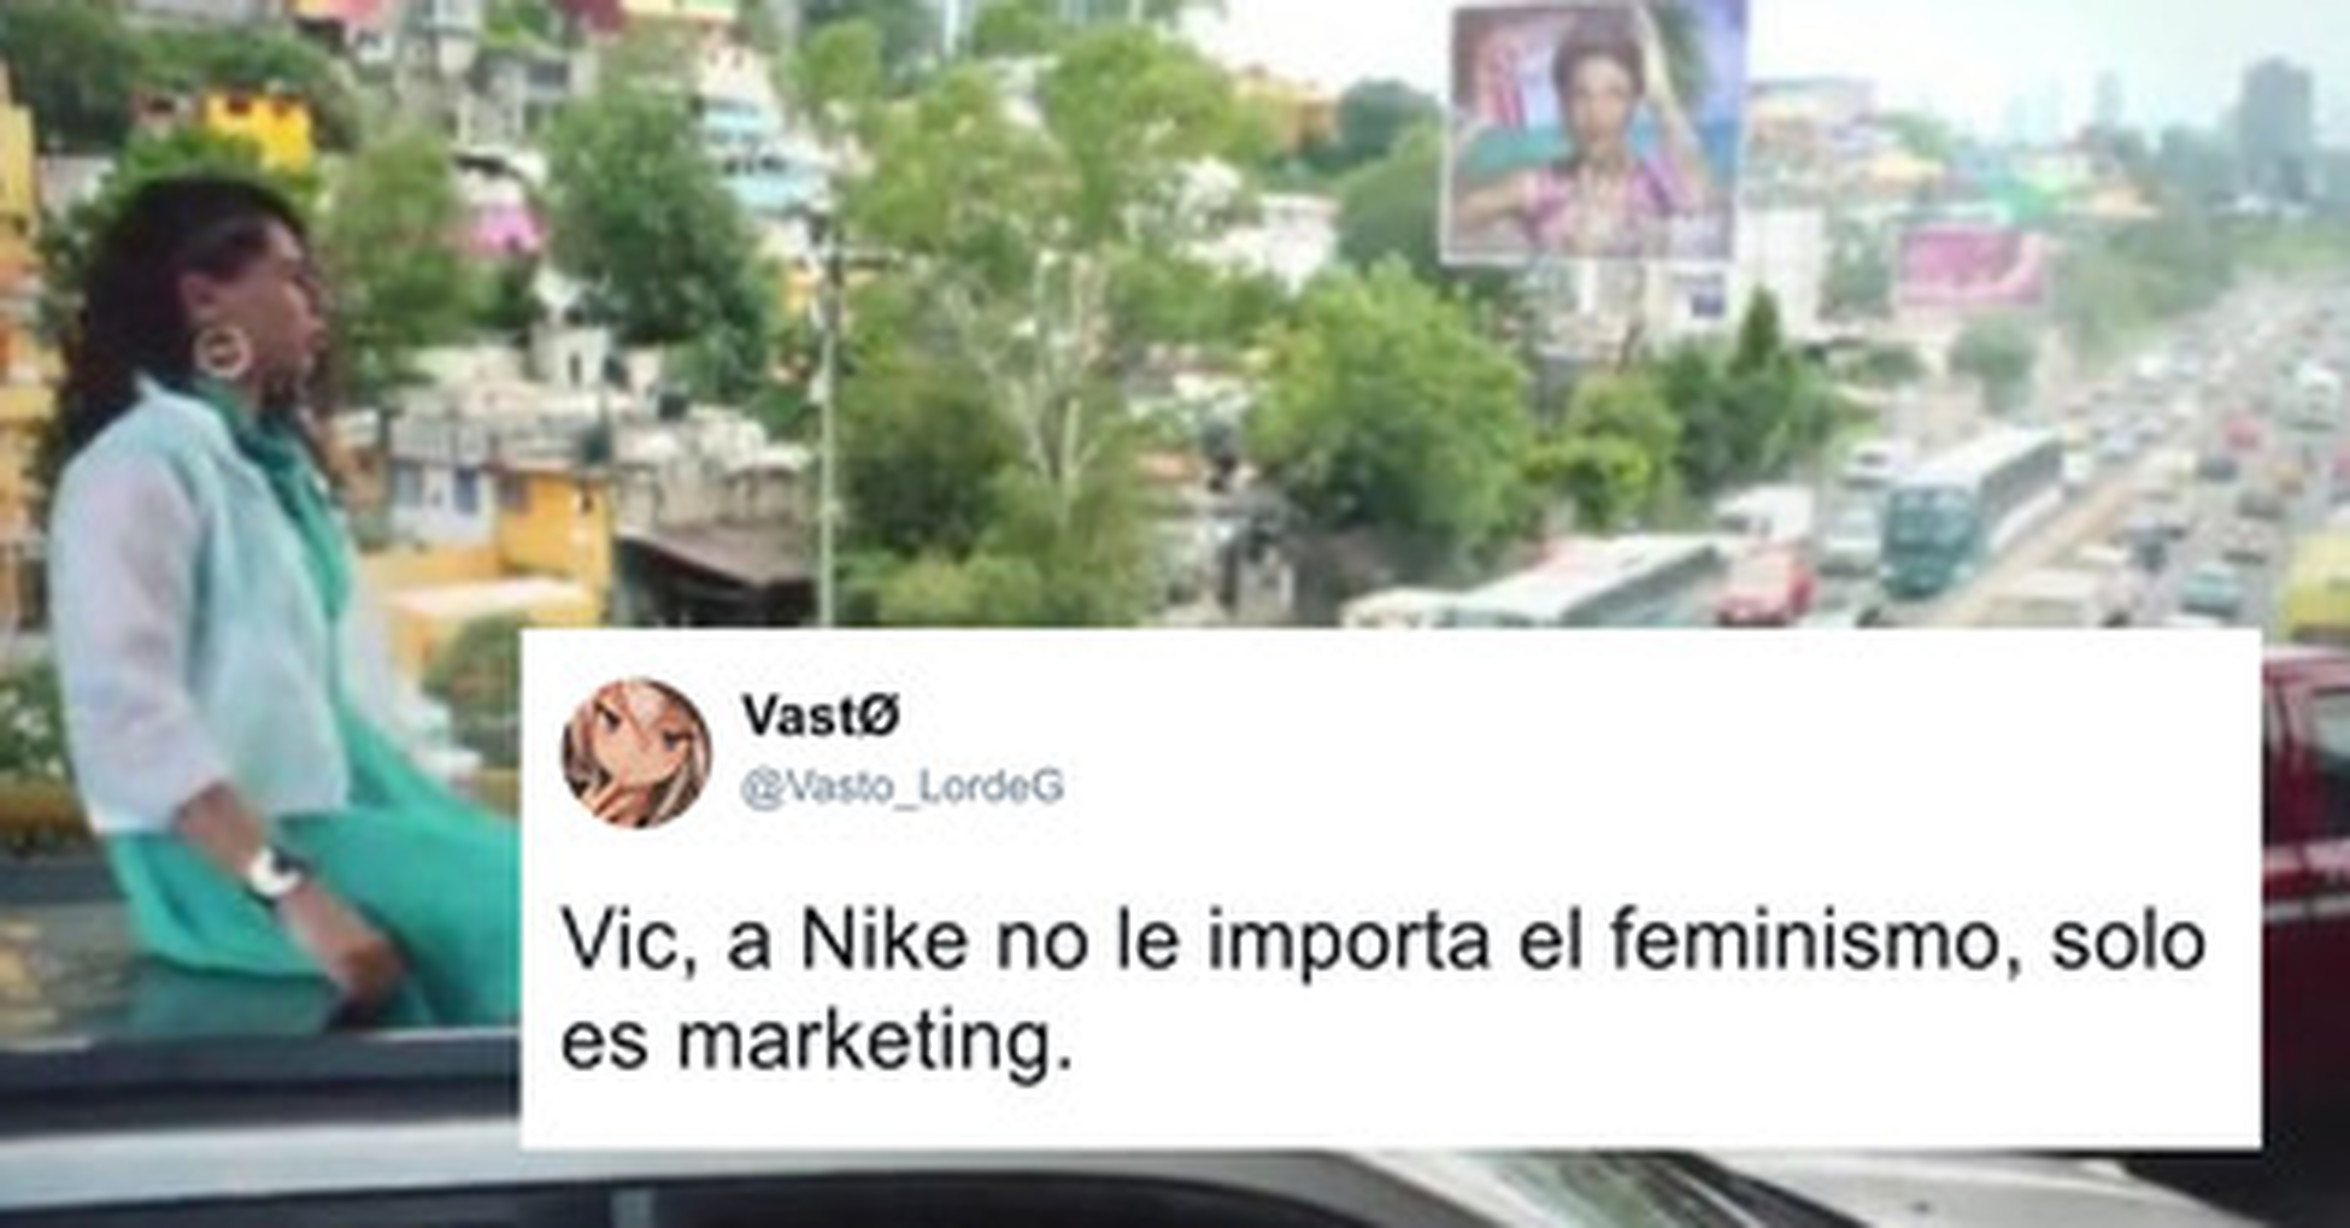 Nike hace un anuncio feminista eso es OK pero se olvida de estos pequeños detalles, por